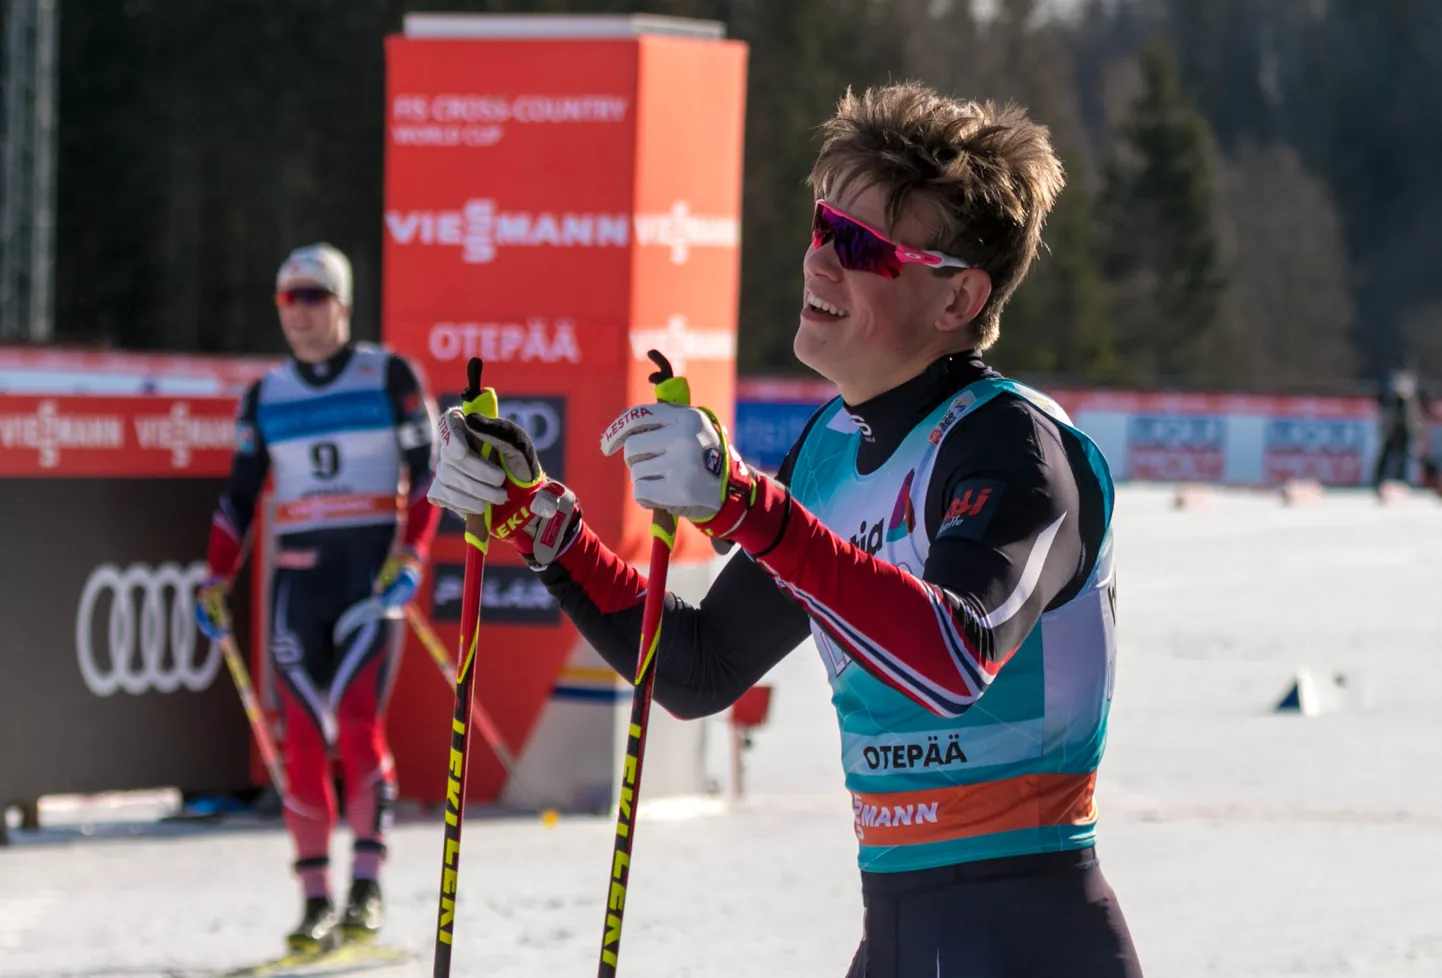 Mullu võistles murdmaasuusatamise Otepää MK-etapil ka tänavune Tour de Ski võitja Johannes Høsflot Klæbo, kes võidutses eelmisel aastal Otepää MK-etapil toimunud vabatehnikasprindis.